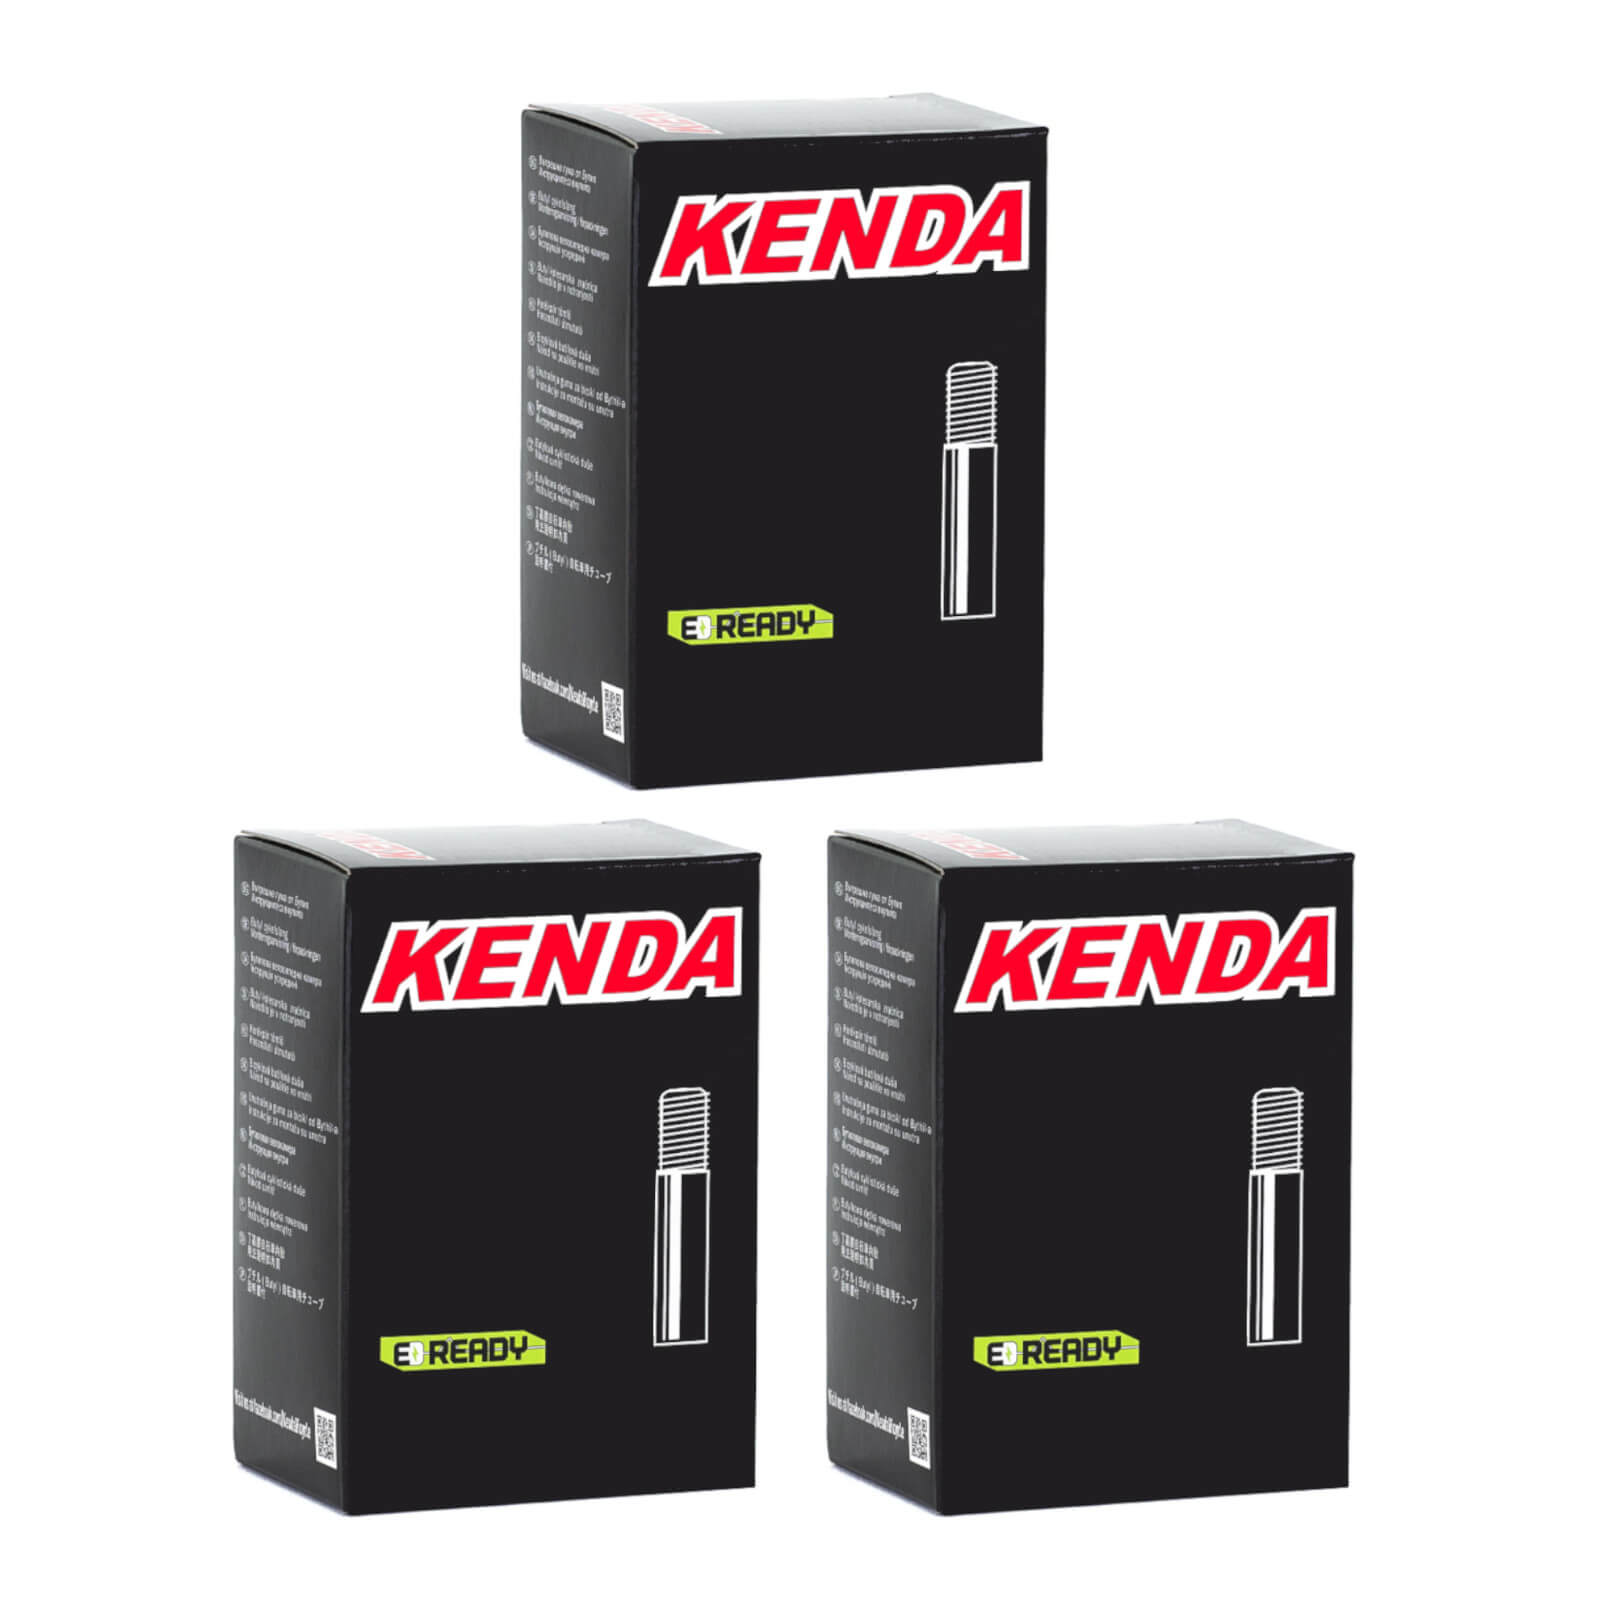 Kenda 20x2.8-3.0" 20 Inch Schrader Valve Bike Inner Tube Pack of 3